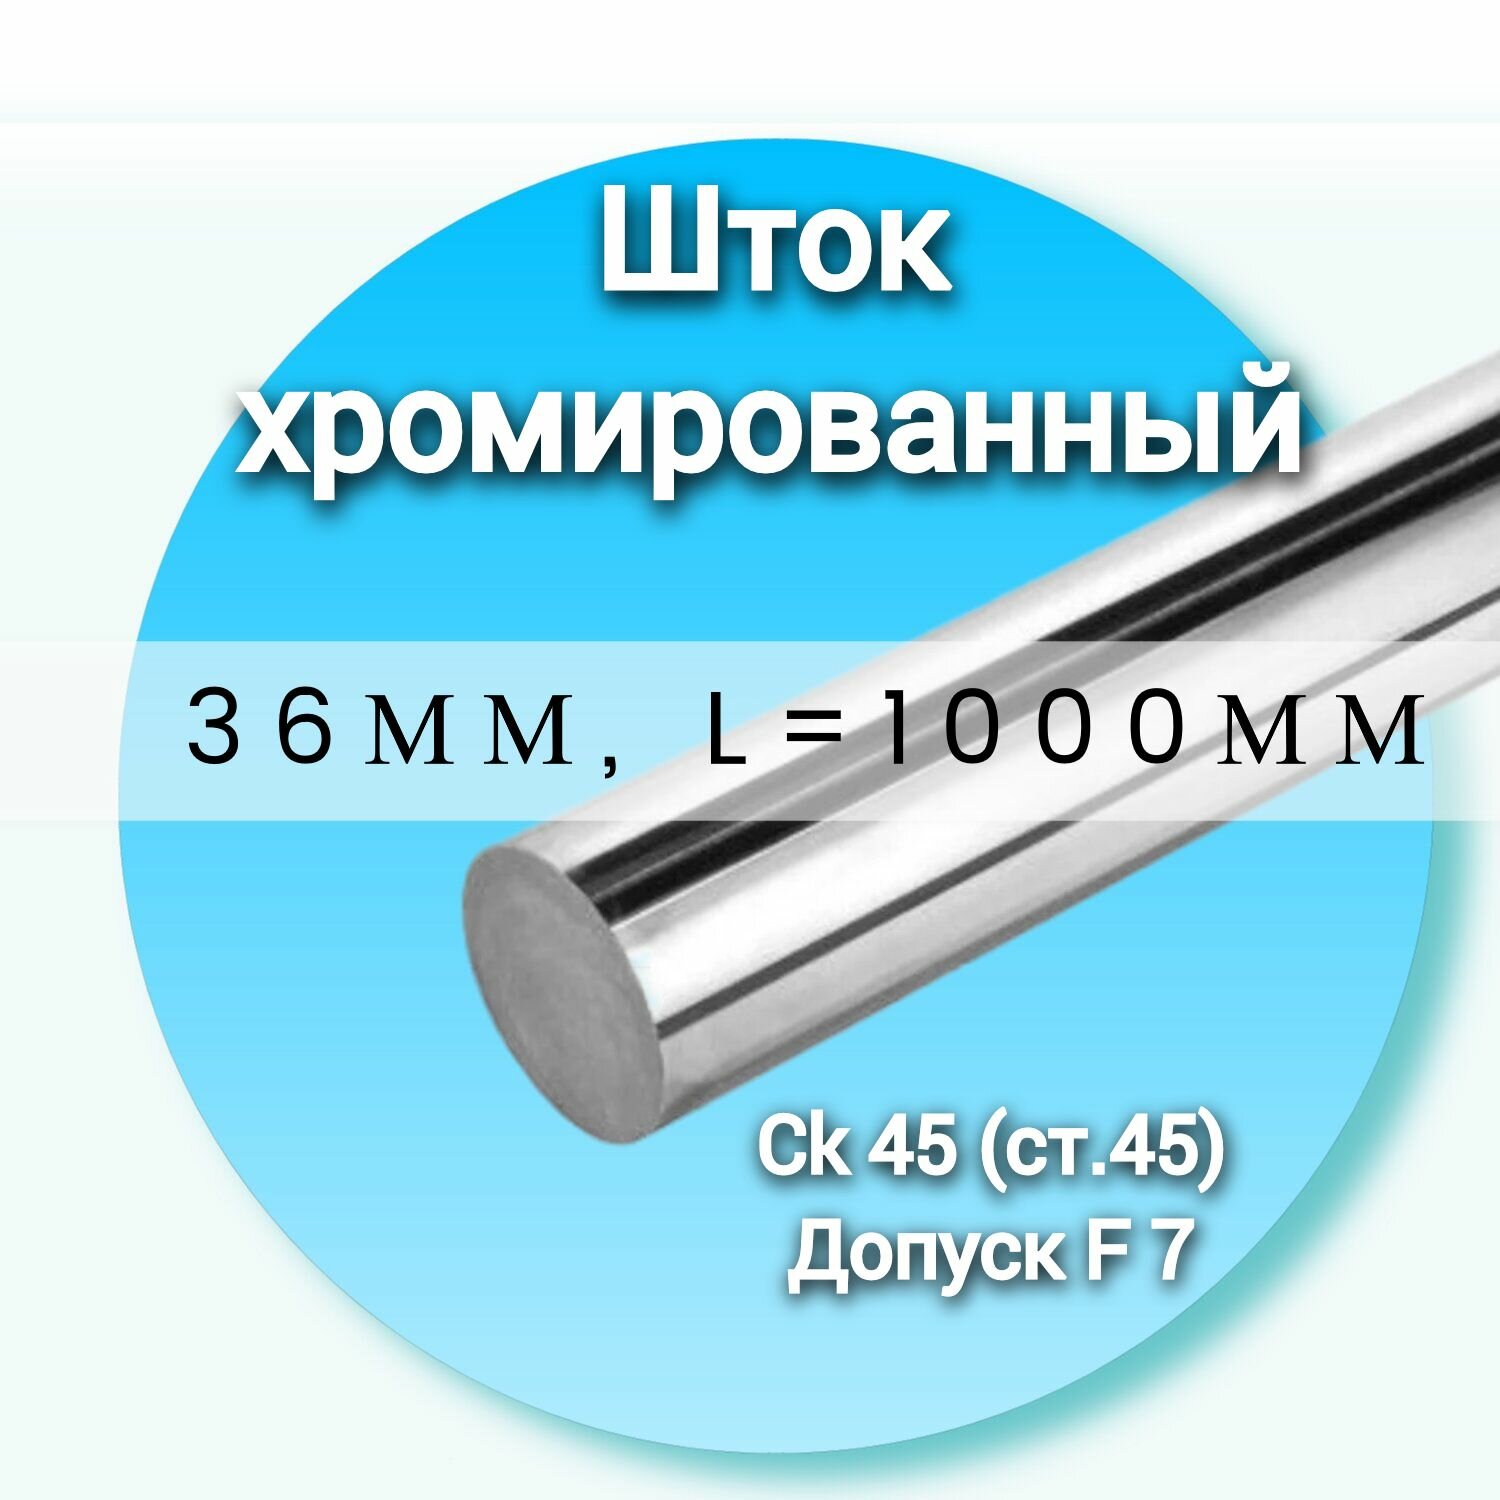 Шток хромированный СК45 f7 36*1000мм / Шток гидроцилиндра 36мм